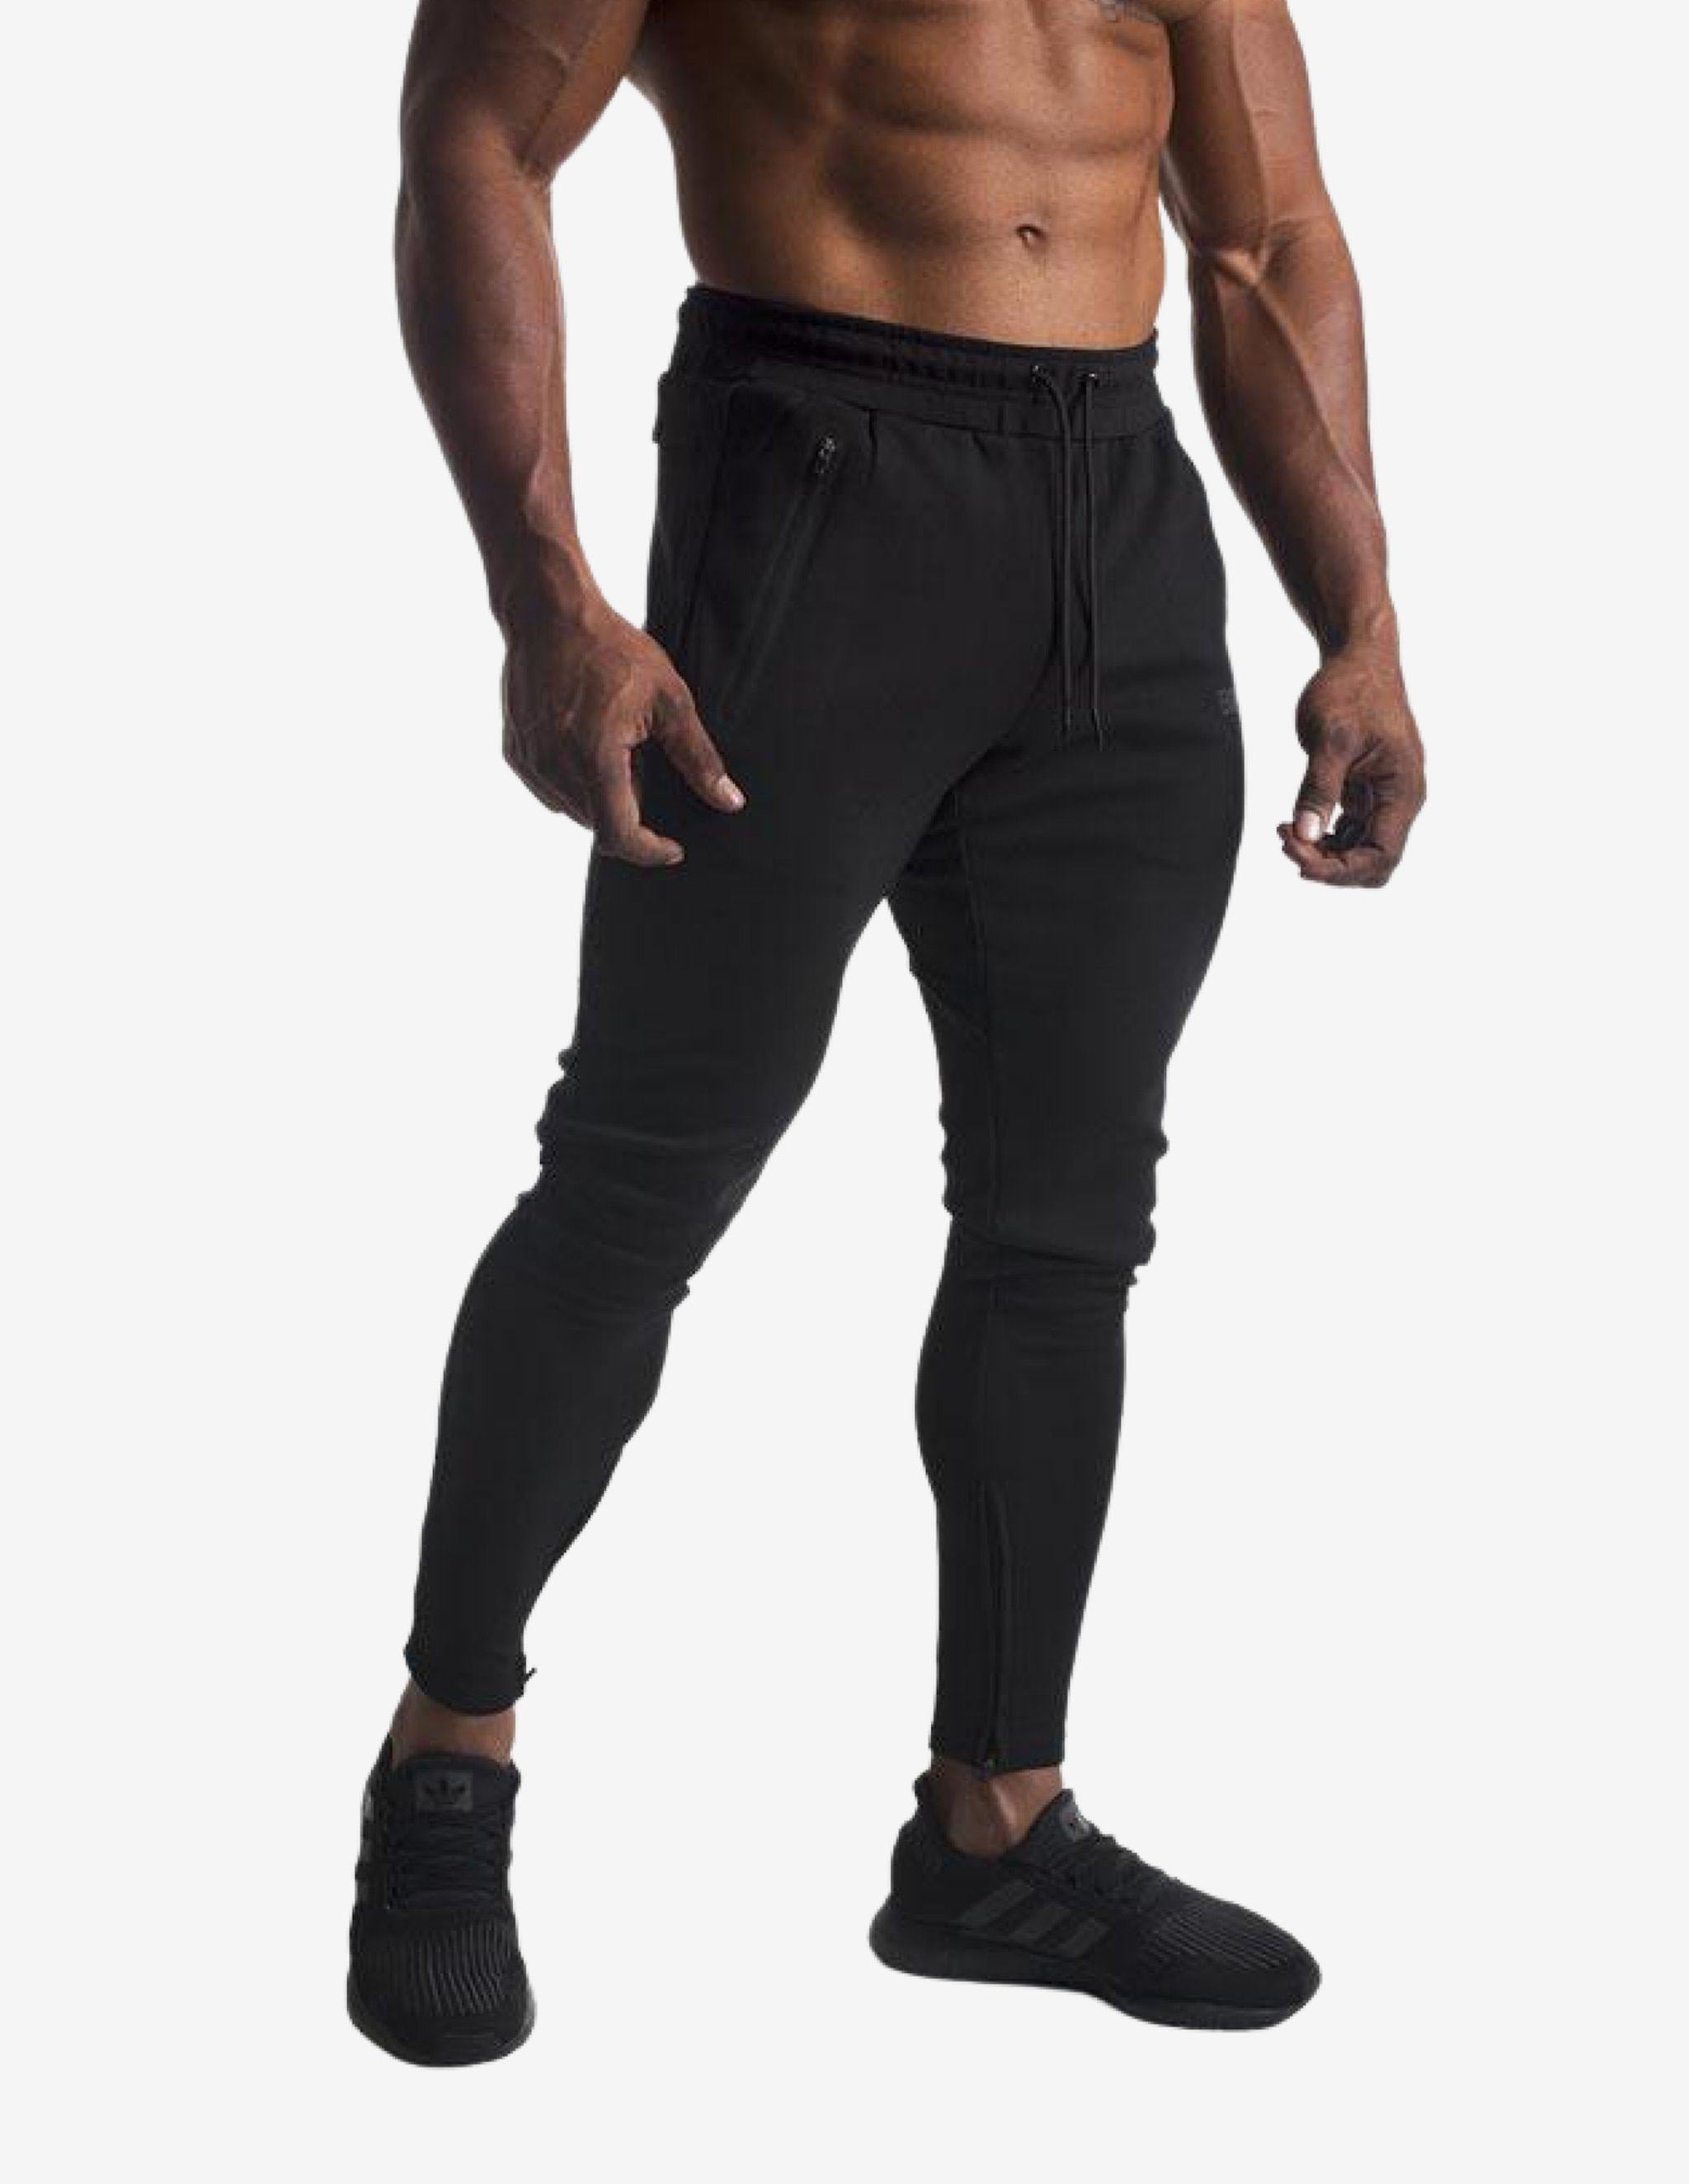 Techweave Set - Black-Men Sets-Biink Athleisure-Guru Muscle